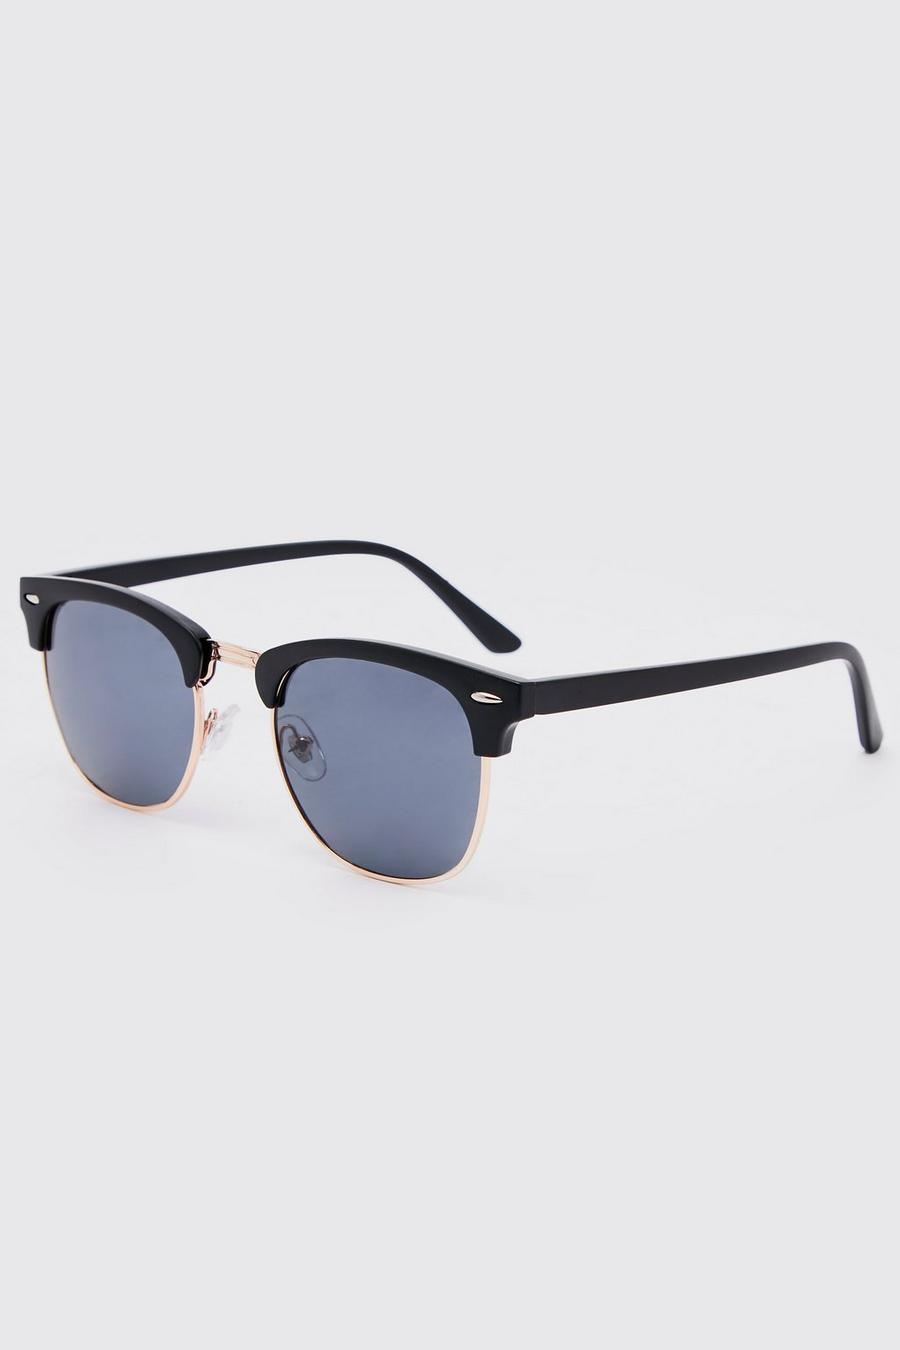 Black Retro Round Sunglasses